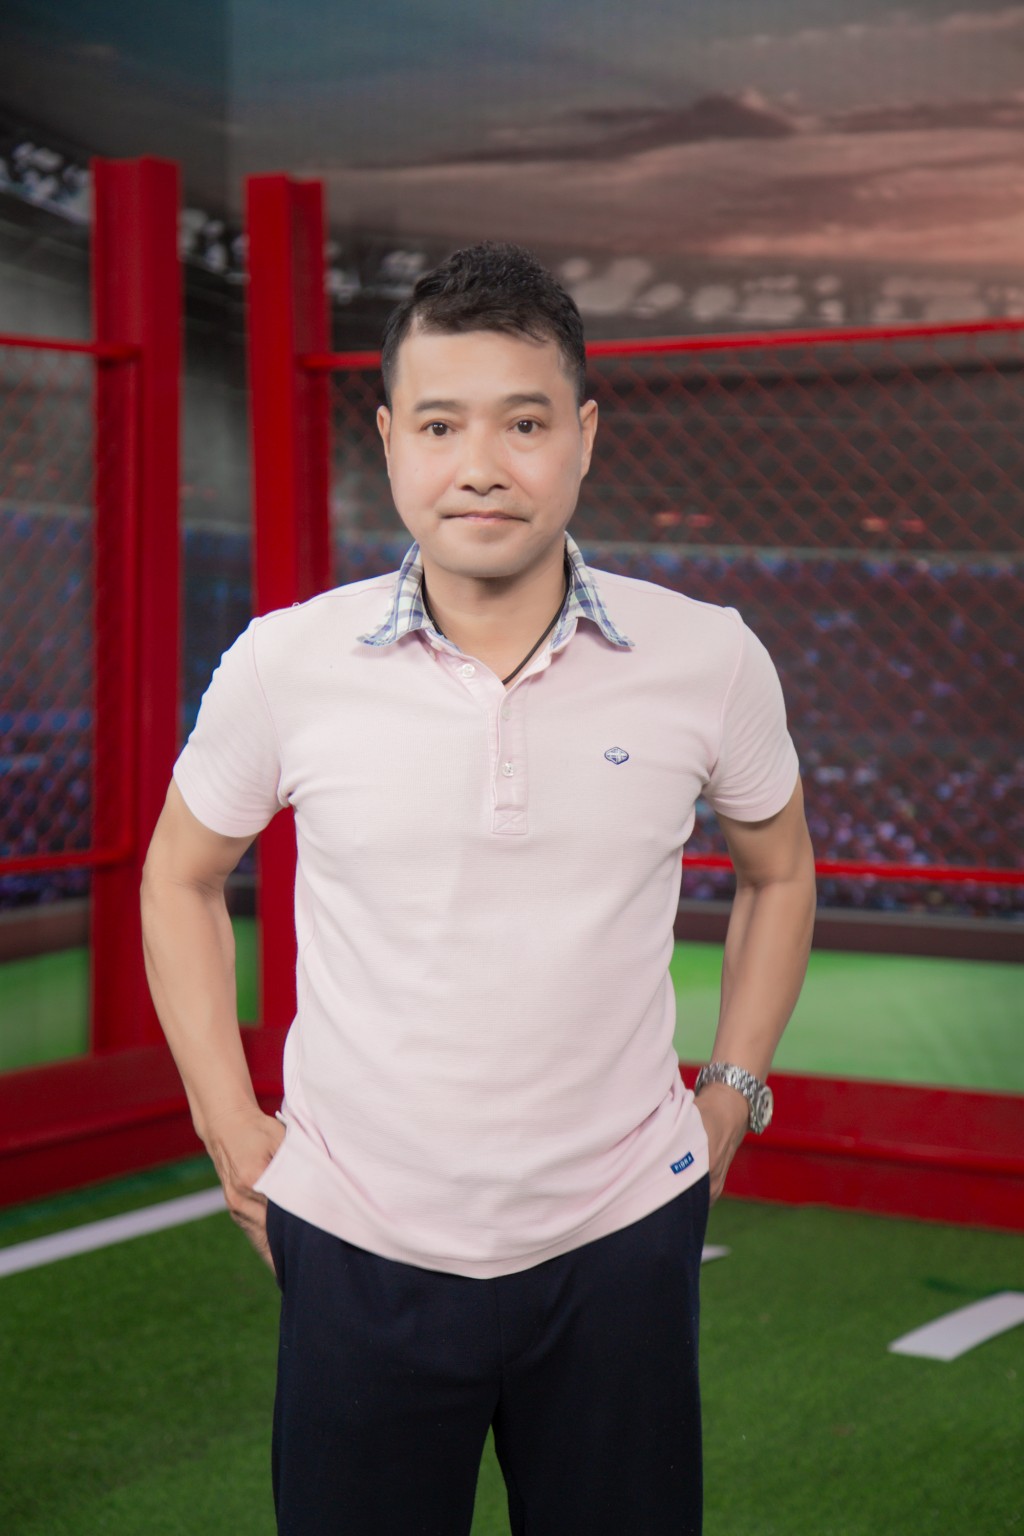 Tiêu chí chọn top 10 cầu thủ nhí của HLV Nguyễn Hồng Sơn và Vũ Như Thành - Ảnh 5.